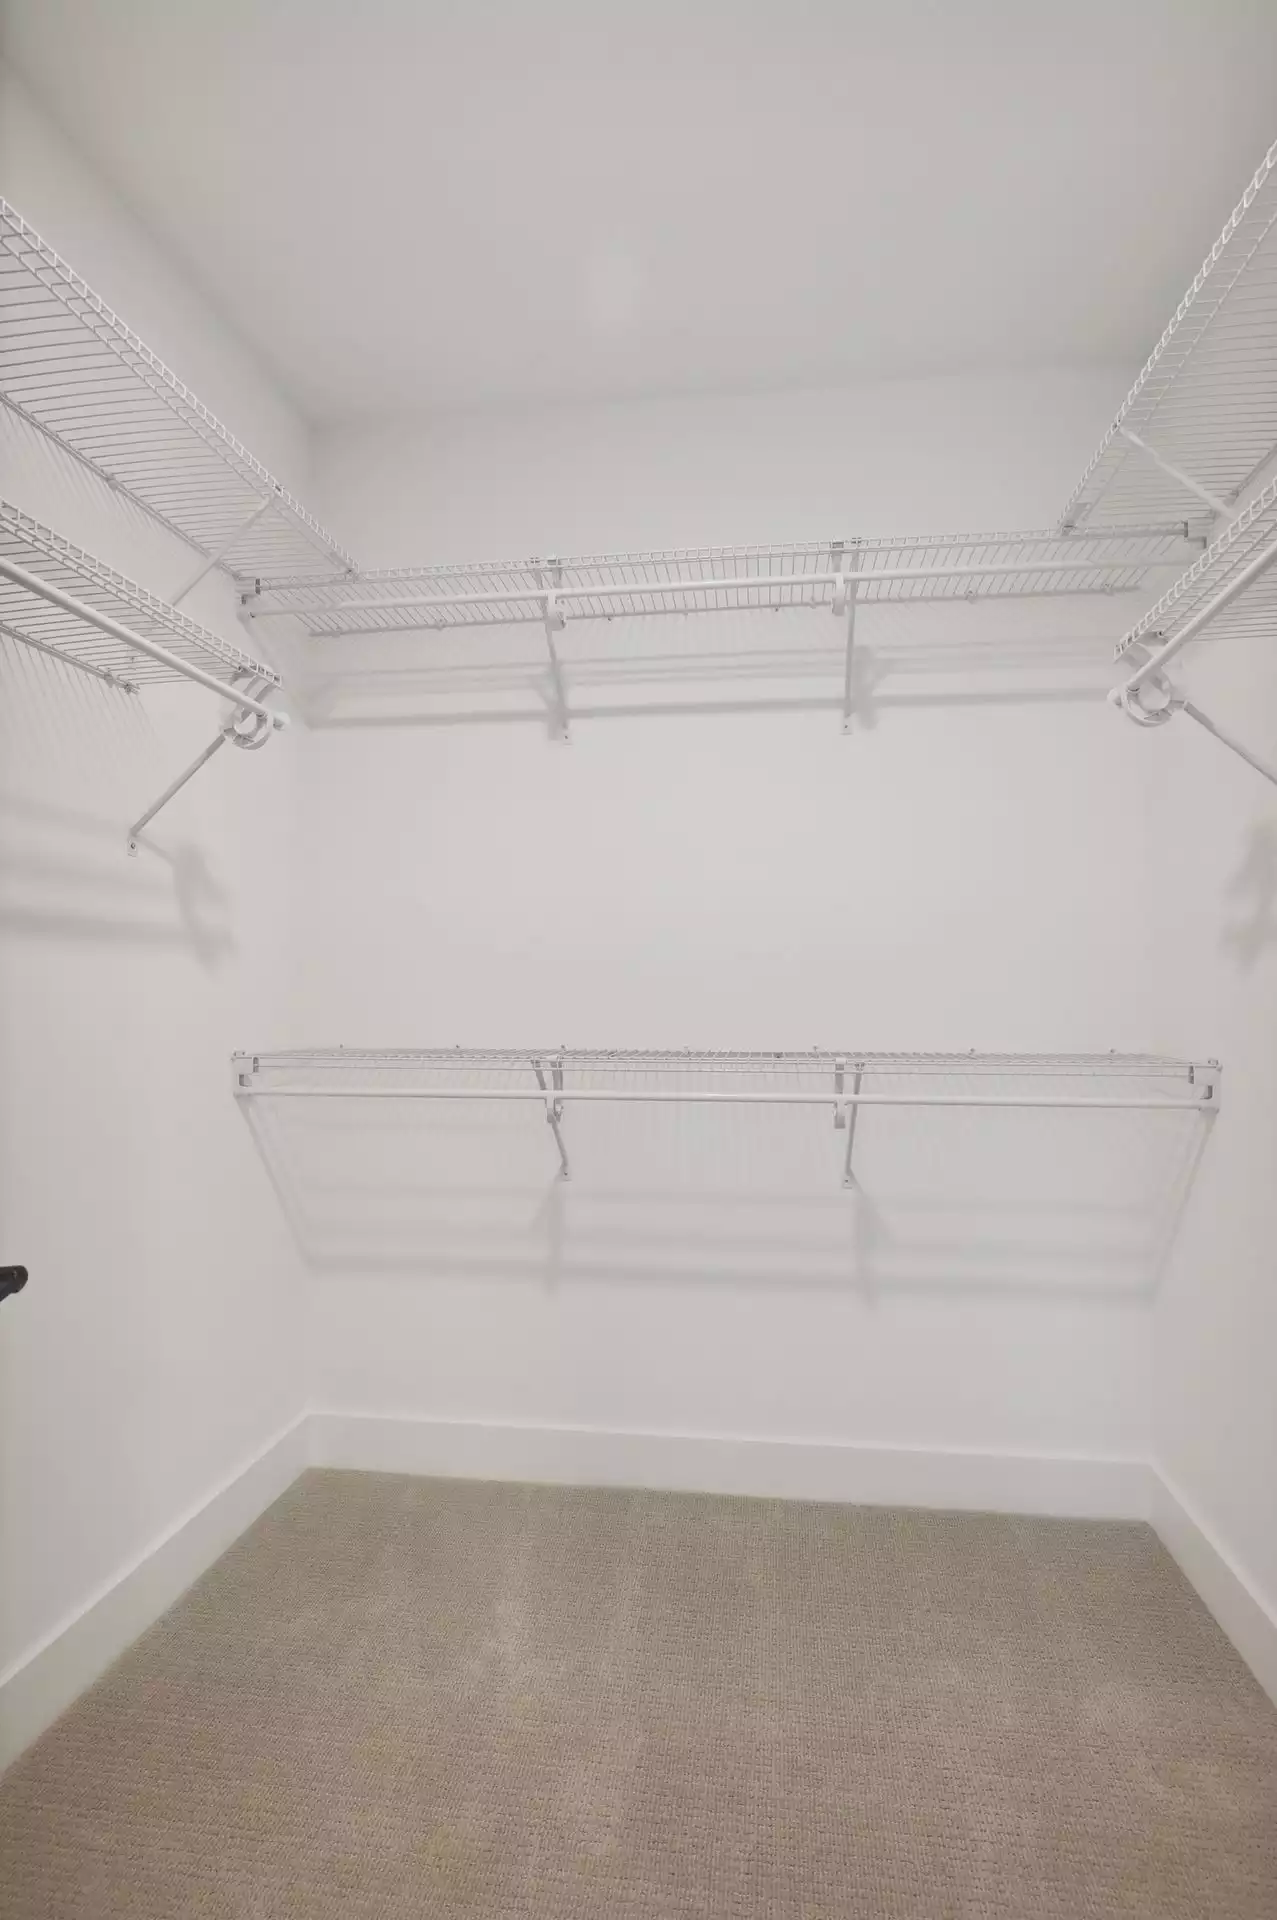 Bedroom walk-in closet with shelves